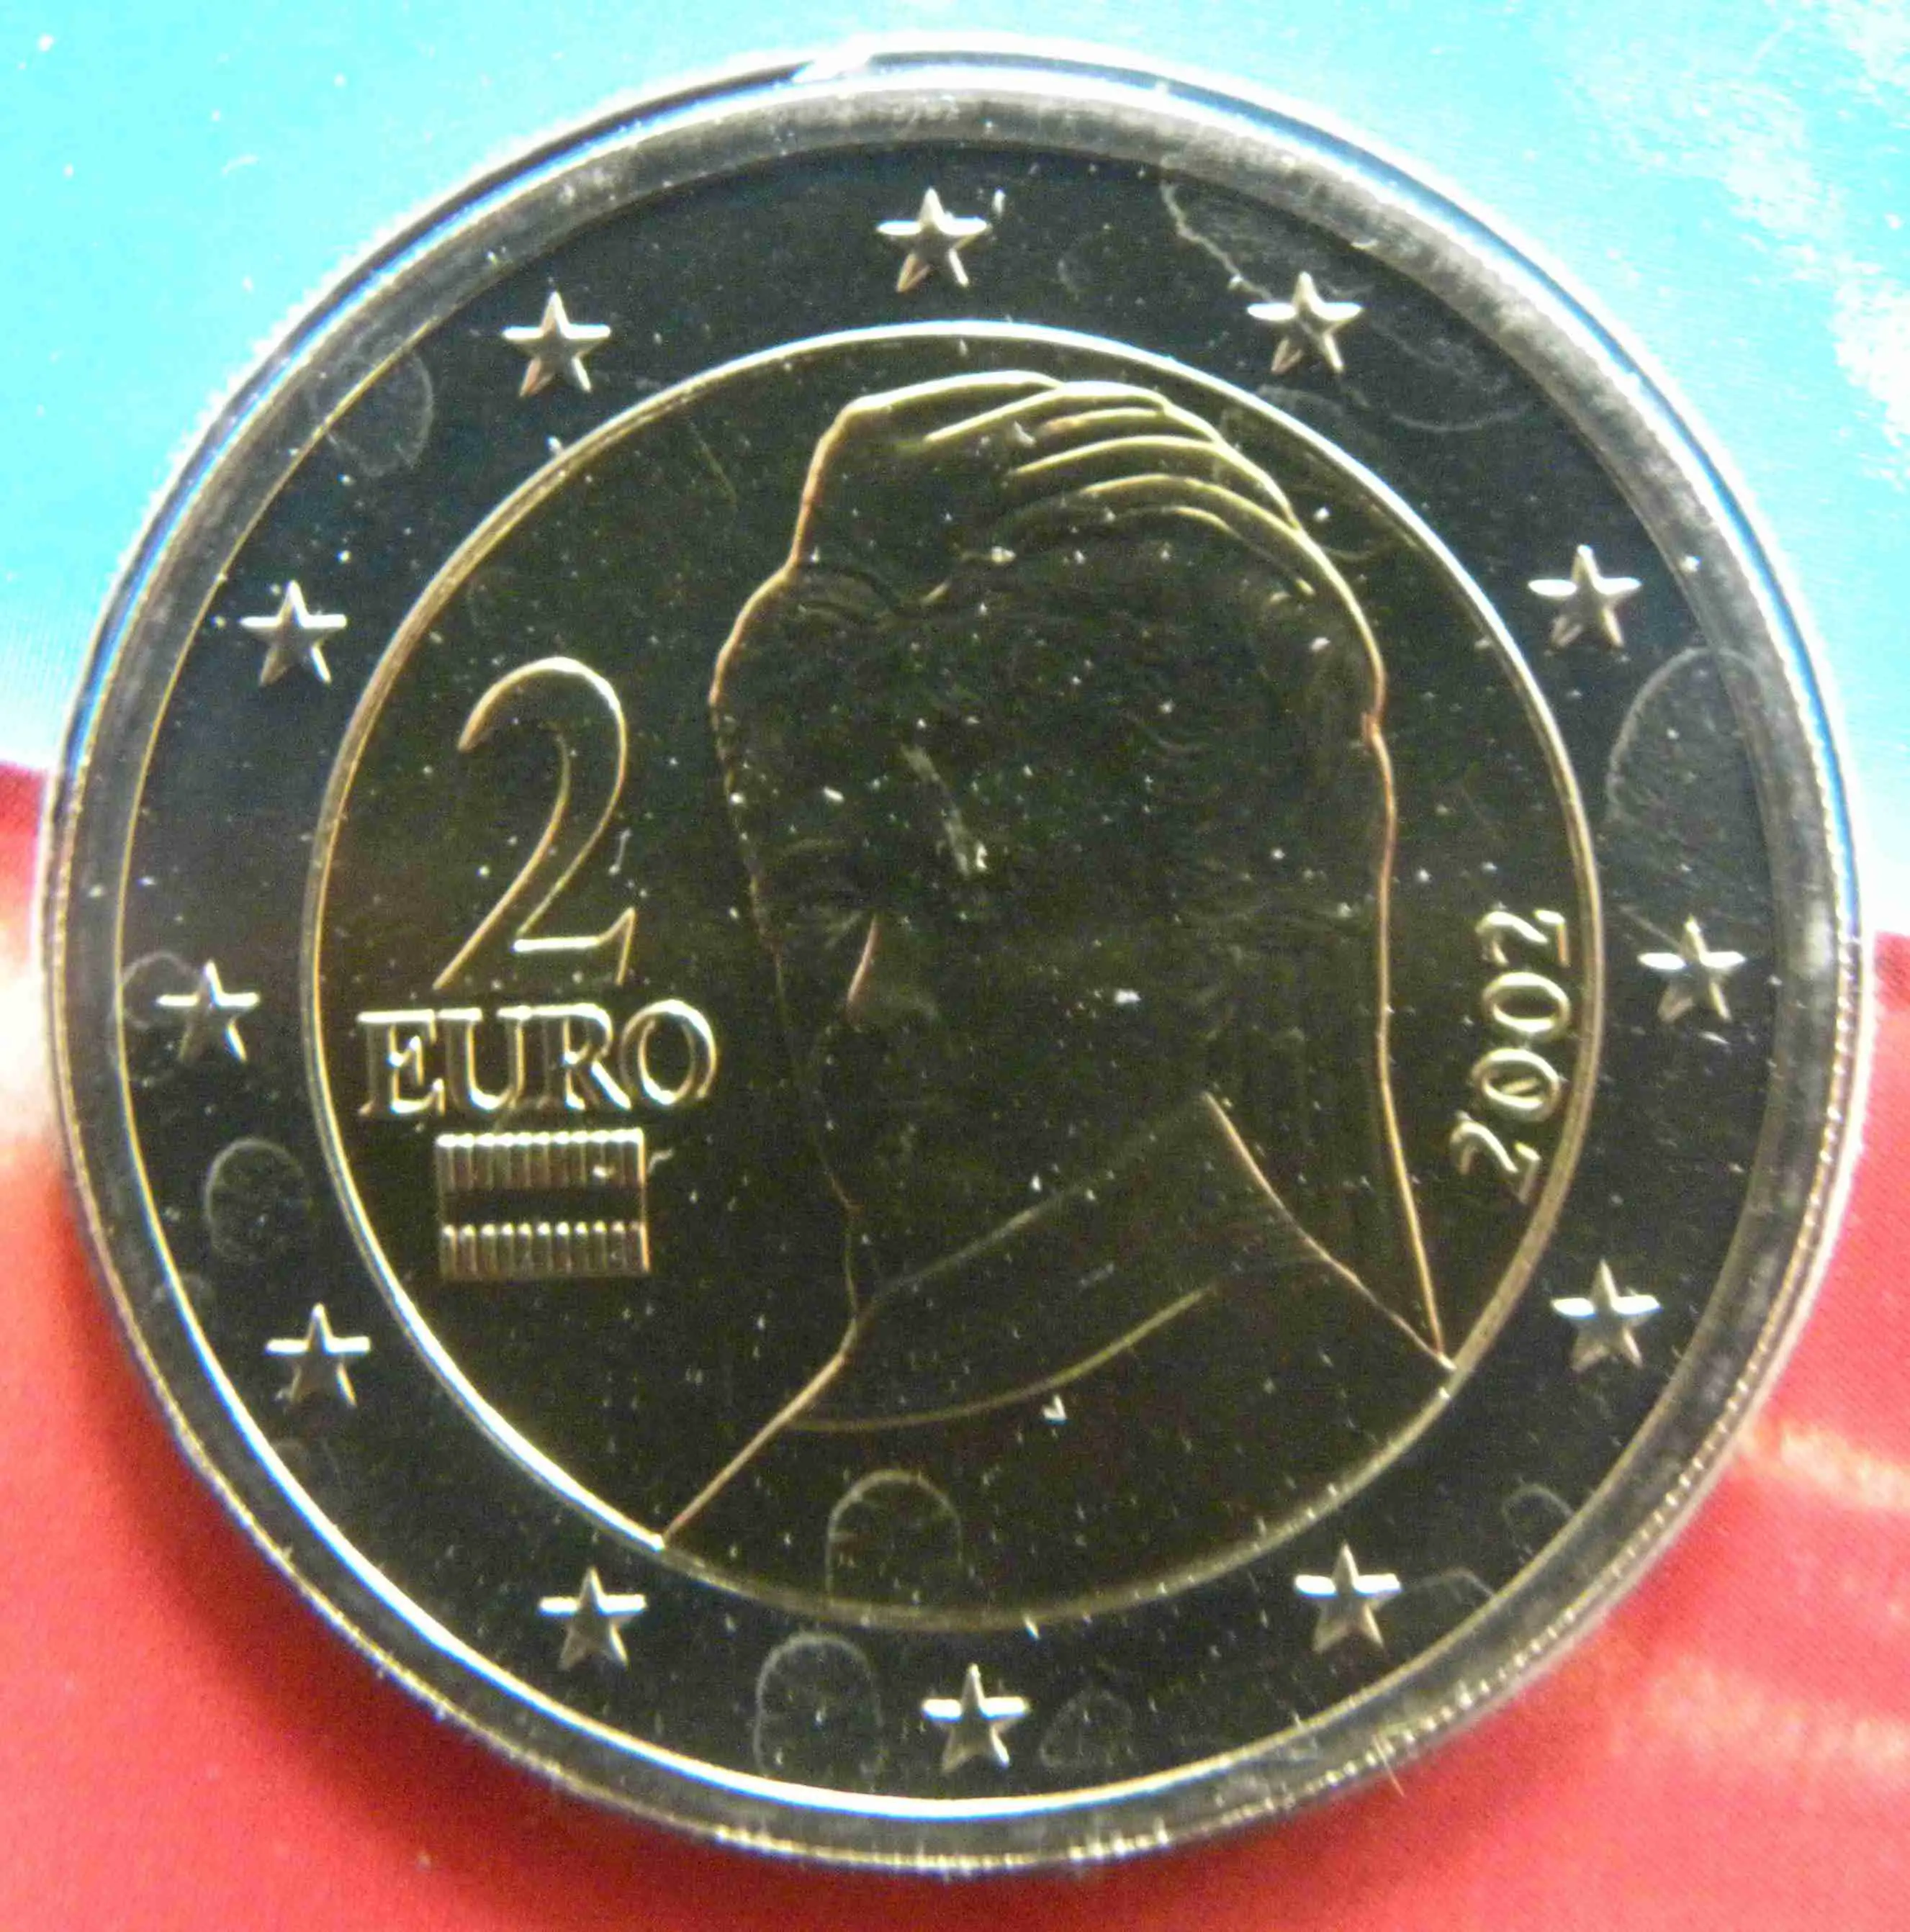 Österreich 2 Euro Münze 2002 - euro-muenzen.tv - Der Online Euromünzen